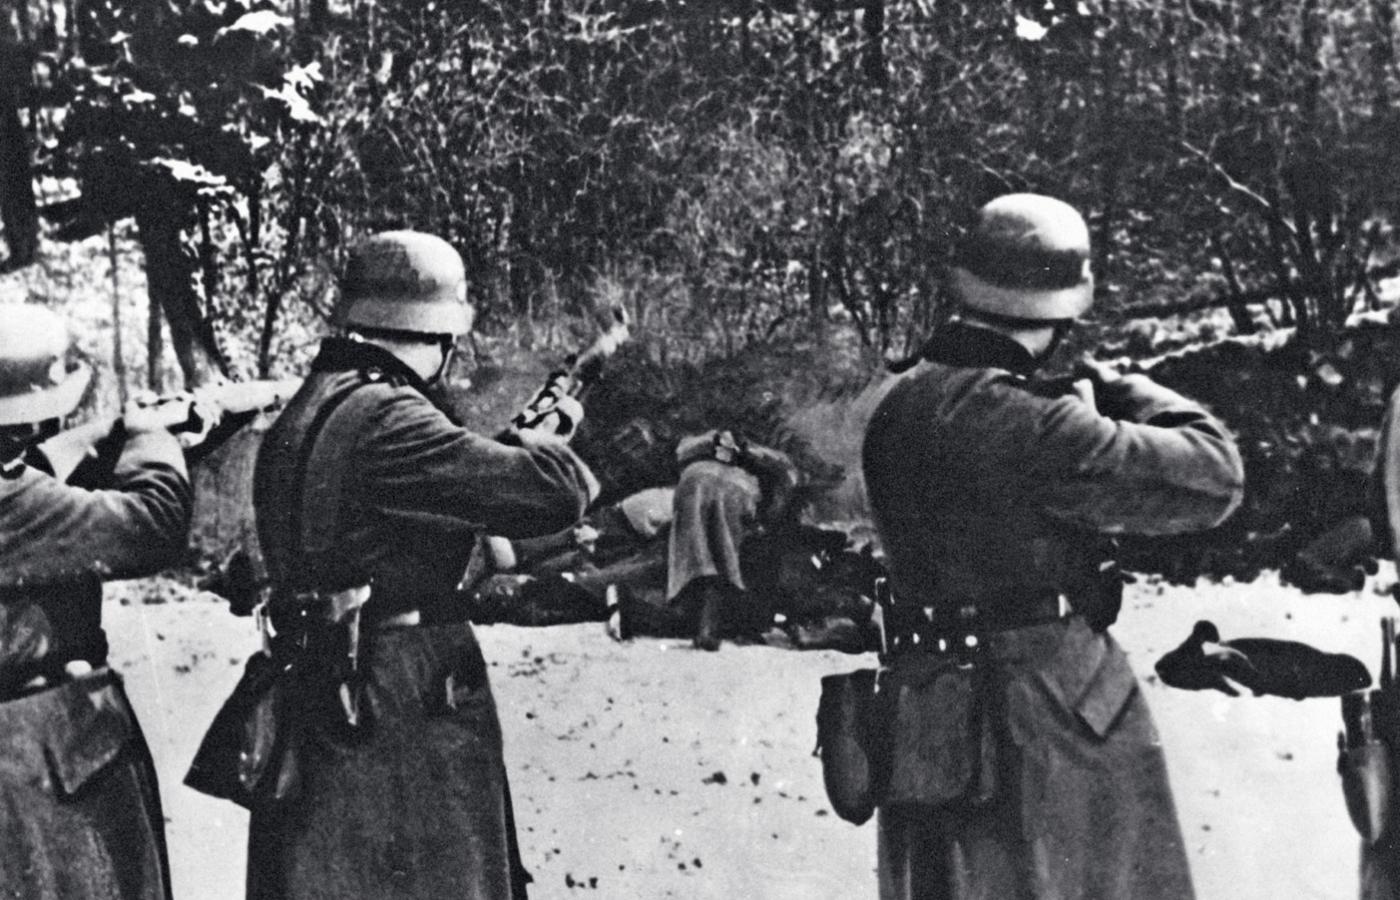 Zbrodnie Wehrmachtu mają swoje korzenie w odgórnych decyzjach, narzucanych całości sił zbrojnych przez dowództwo.